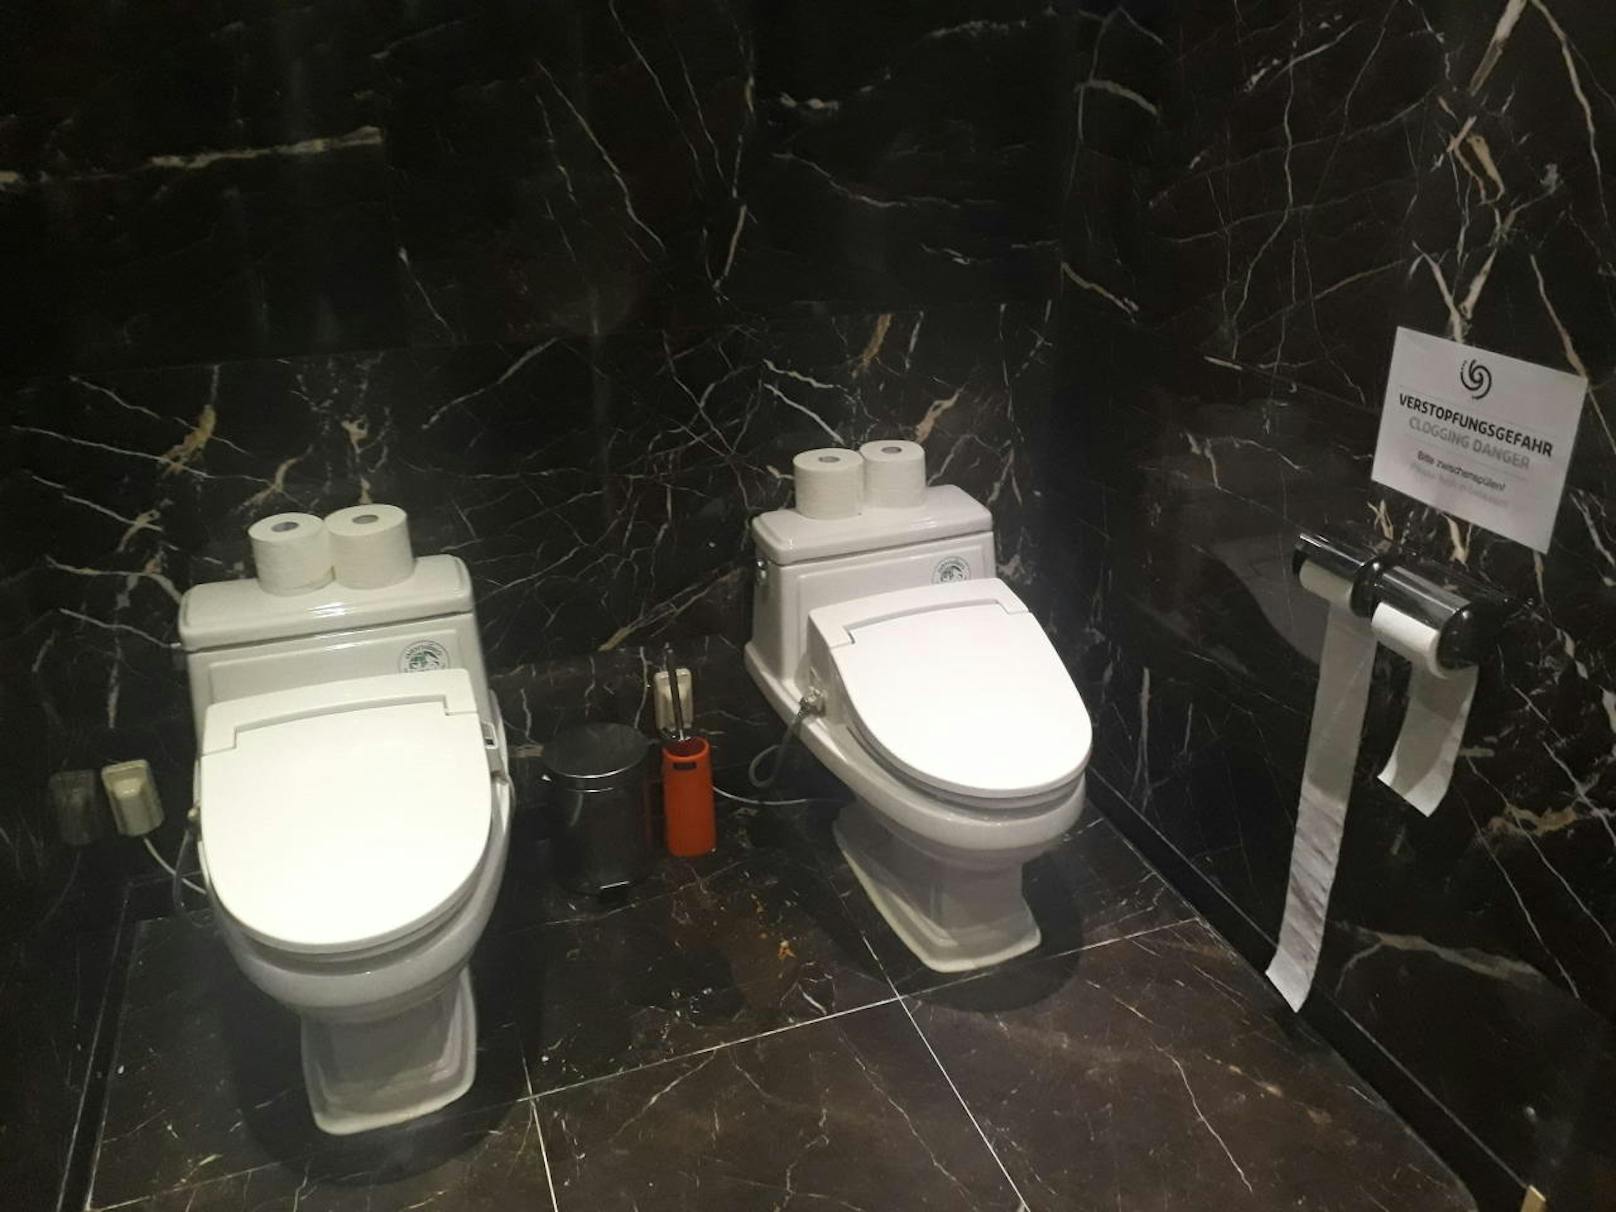 Aber wieso gibt es zwei Toiletten nebeneinander?